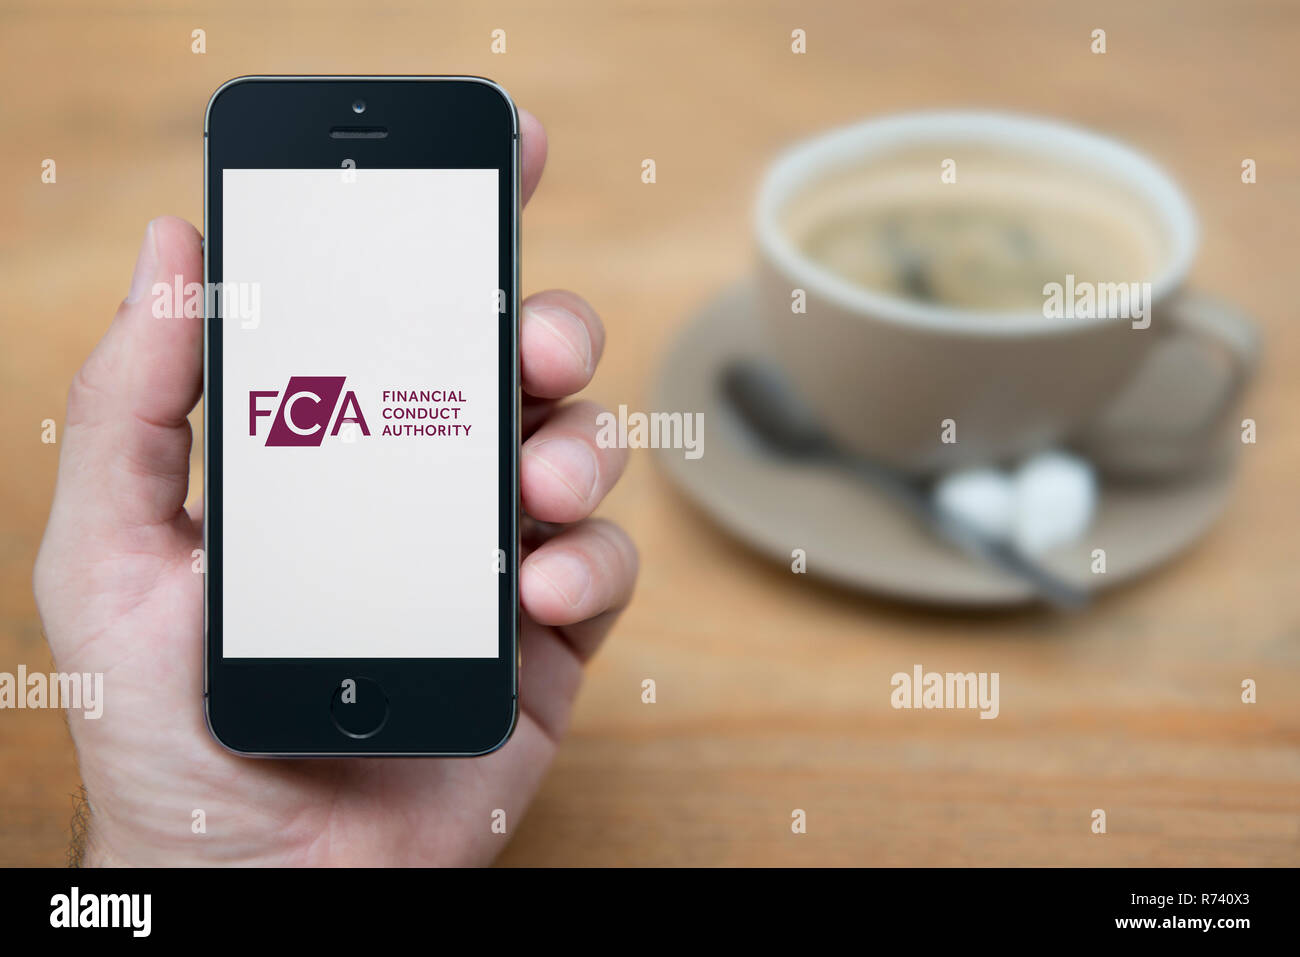 Un hombre mira el iPhone que muestra el comportamiento financiero competente (FCA) El logotipo (uso Editorial solamente). Foto de stock